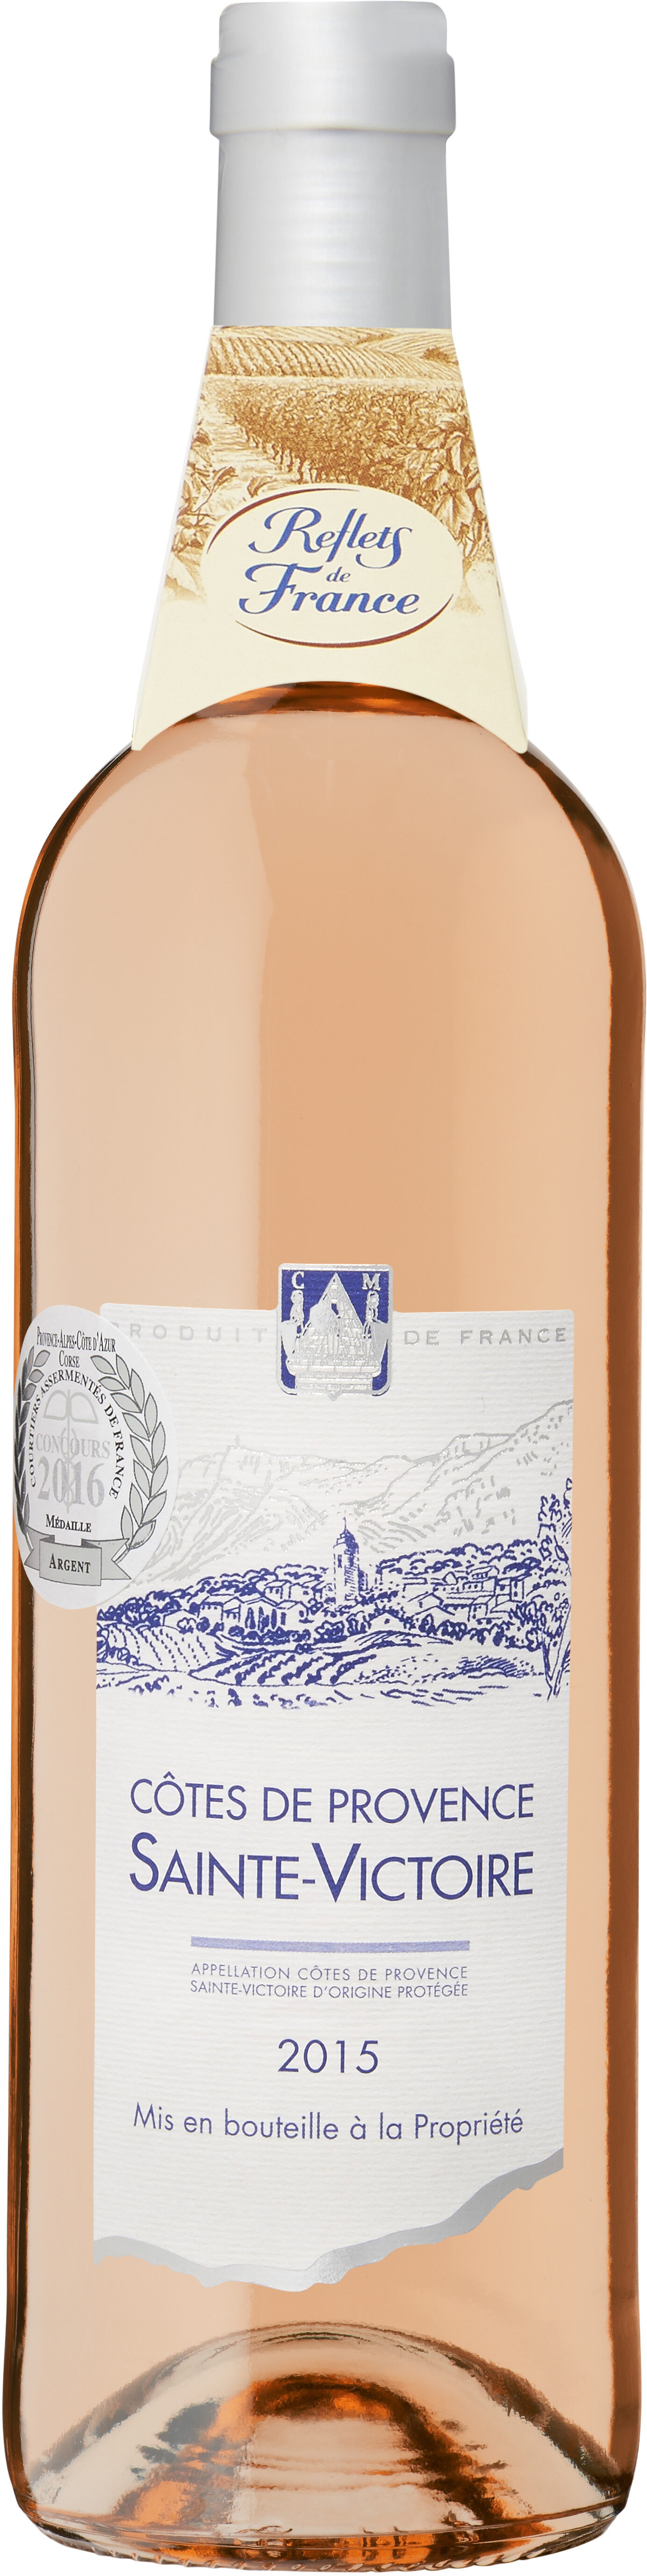 Côtes De Provence Sainte Victoire - 2014 - Product - fr